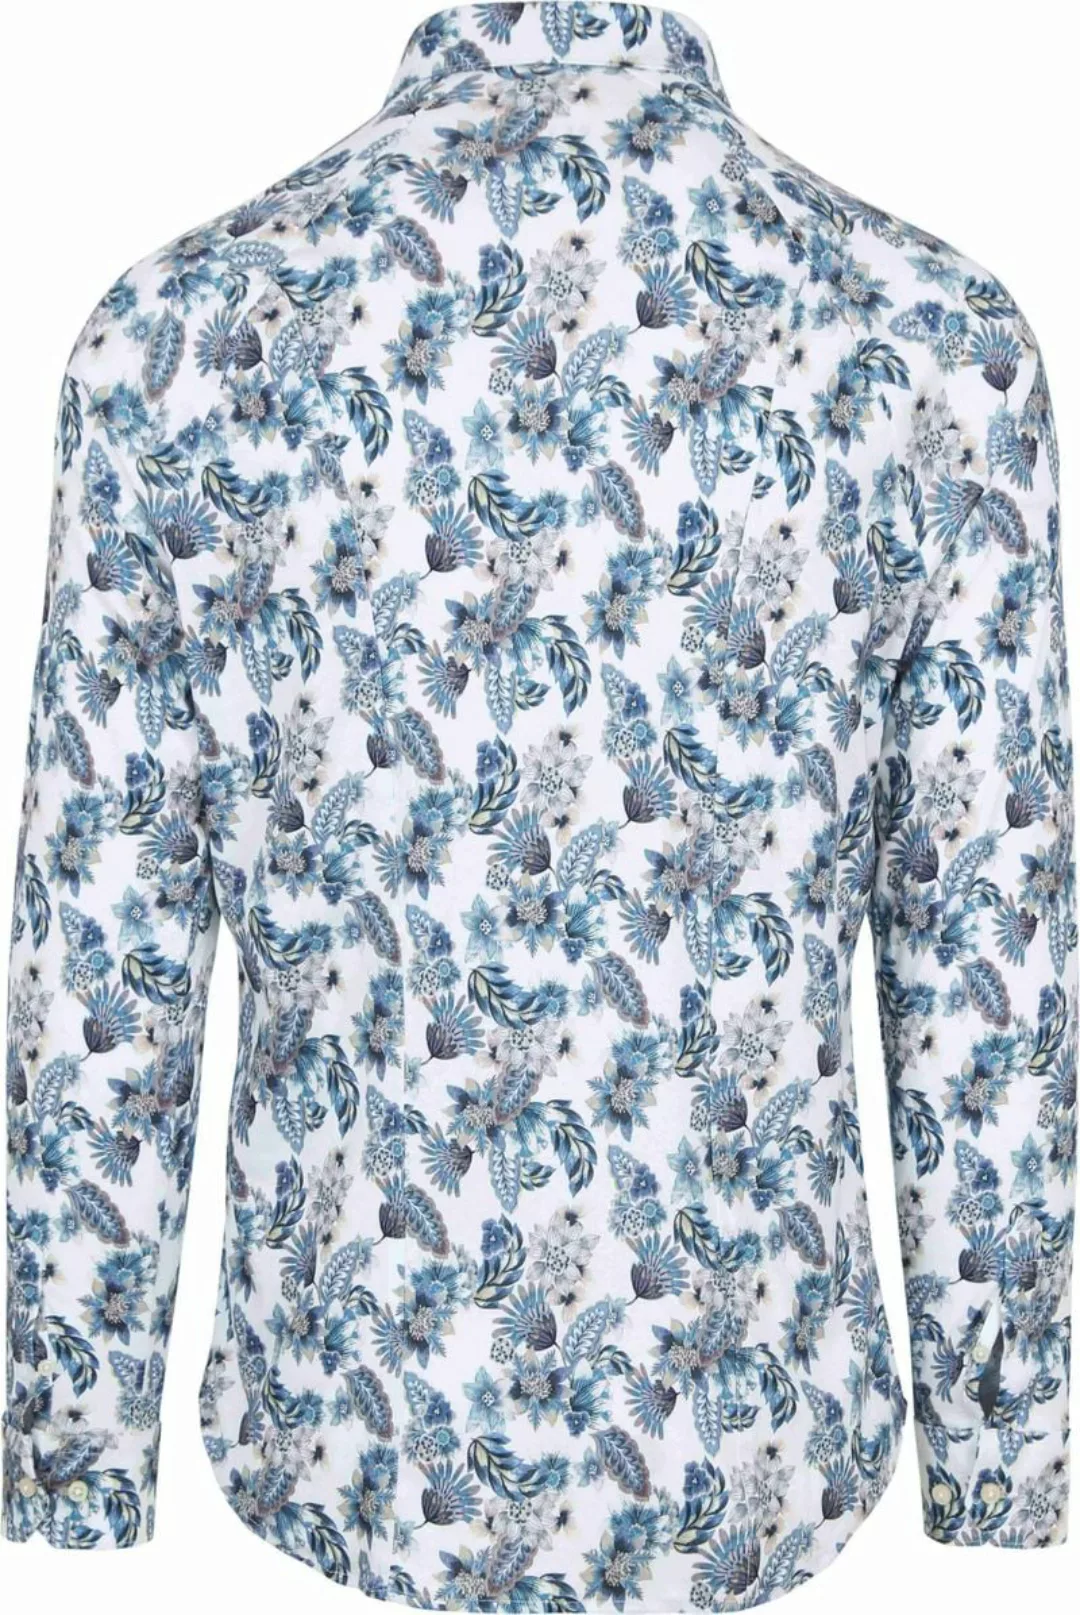 DESOTO Hemd Kent Blumenmuster Blau  - Größe L günstig online kaufen